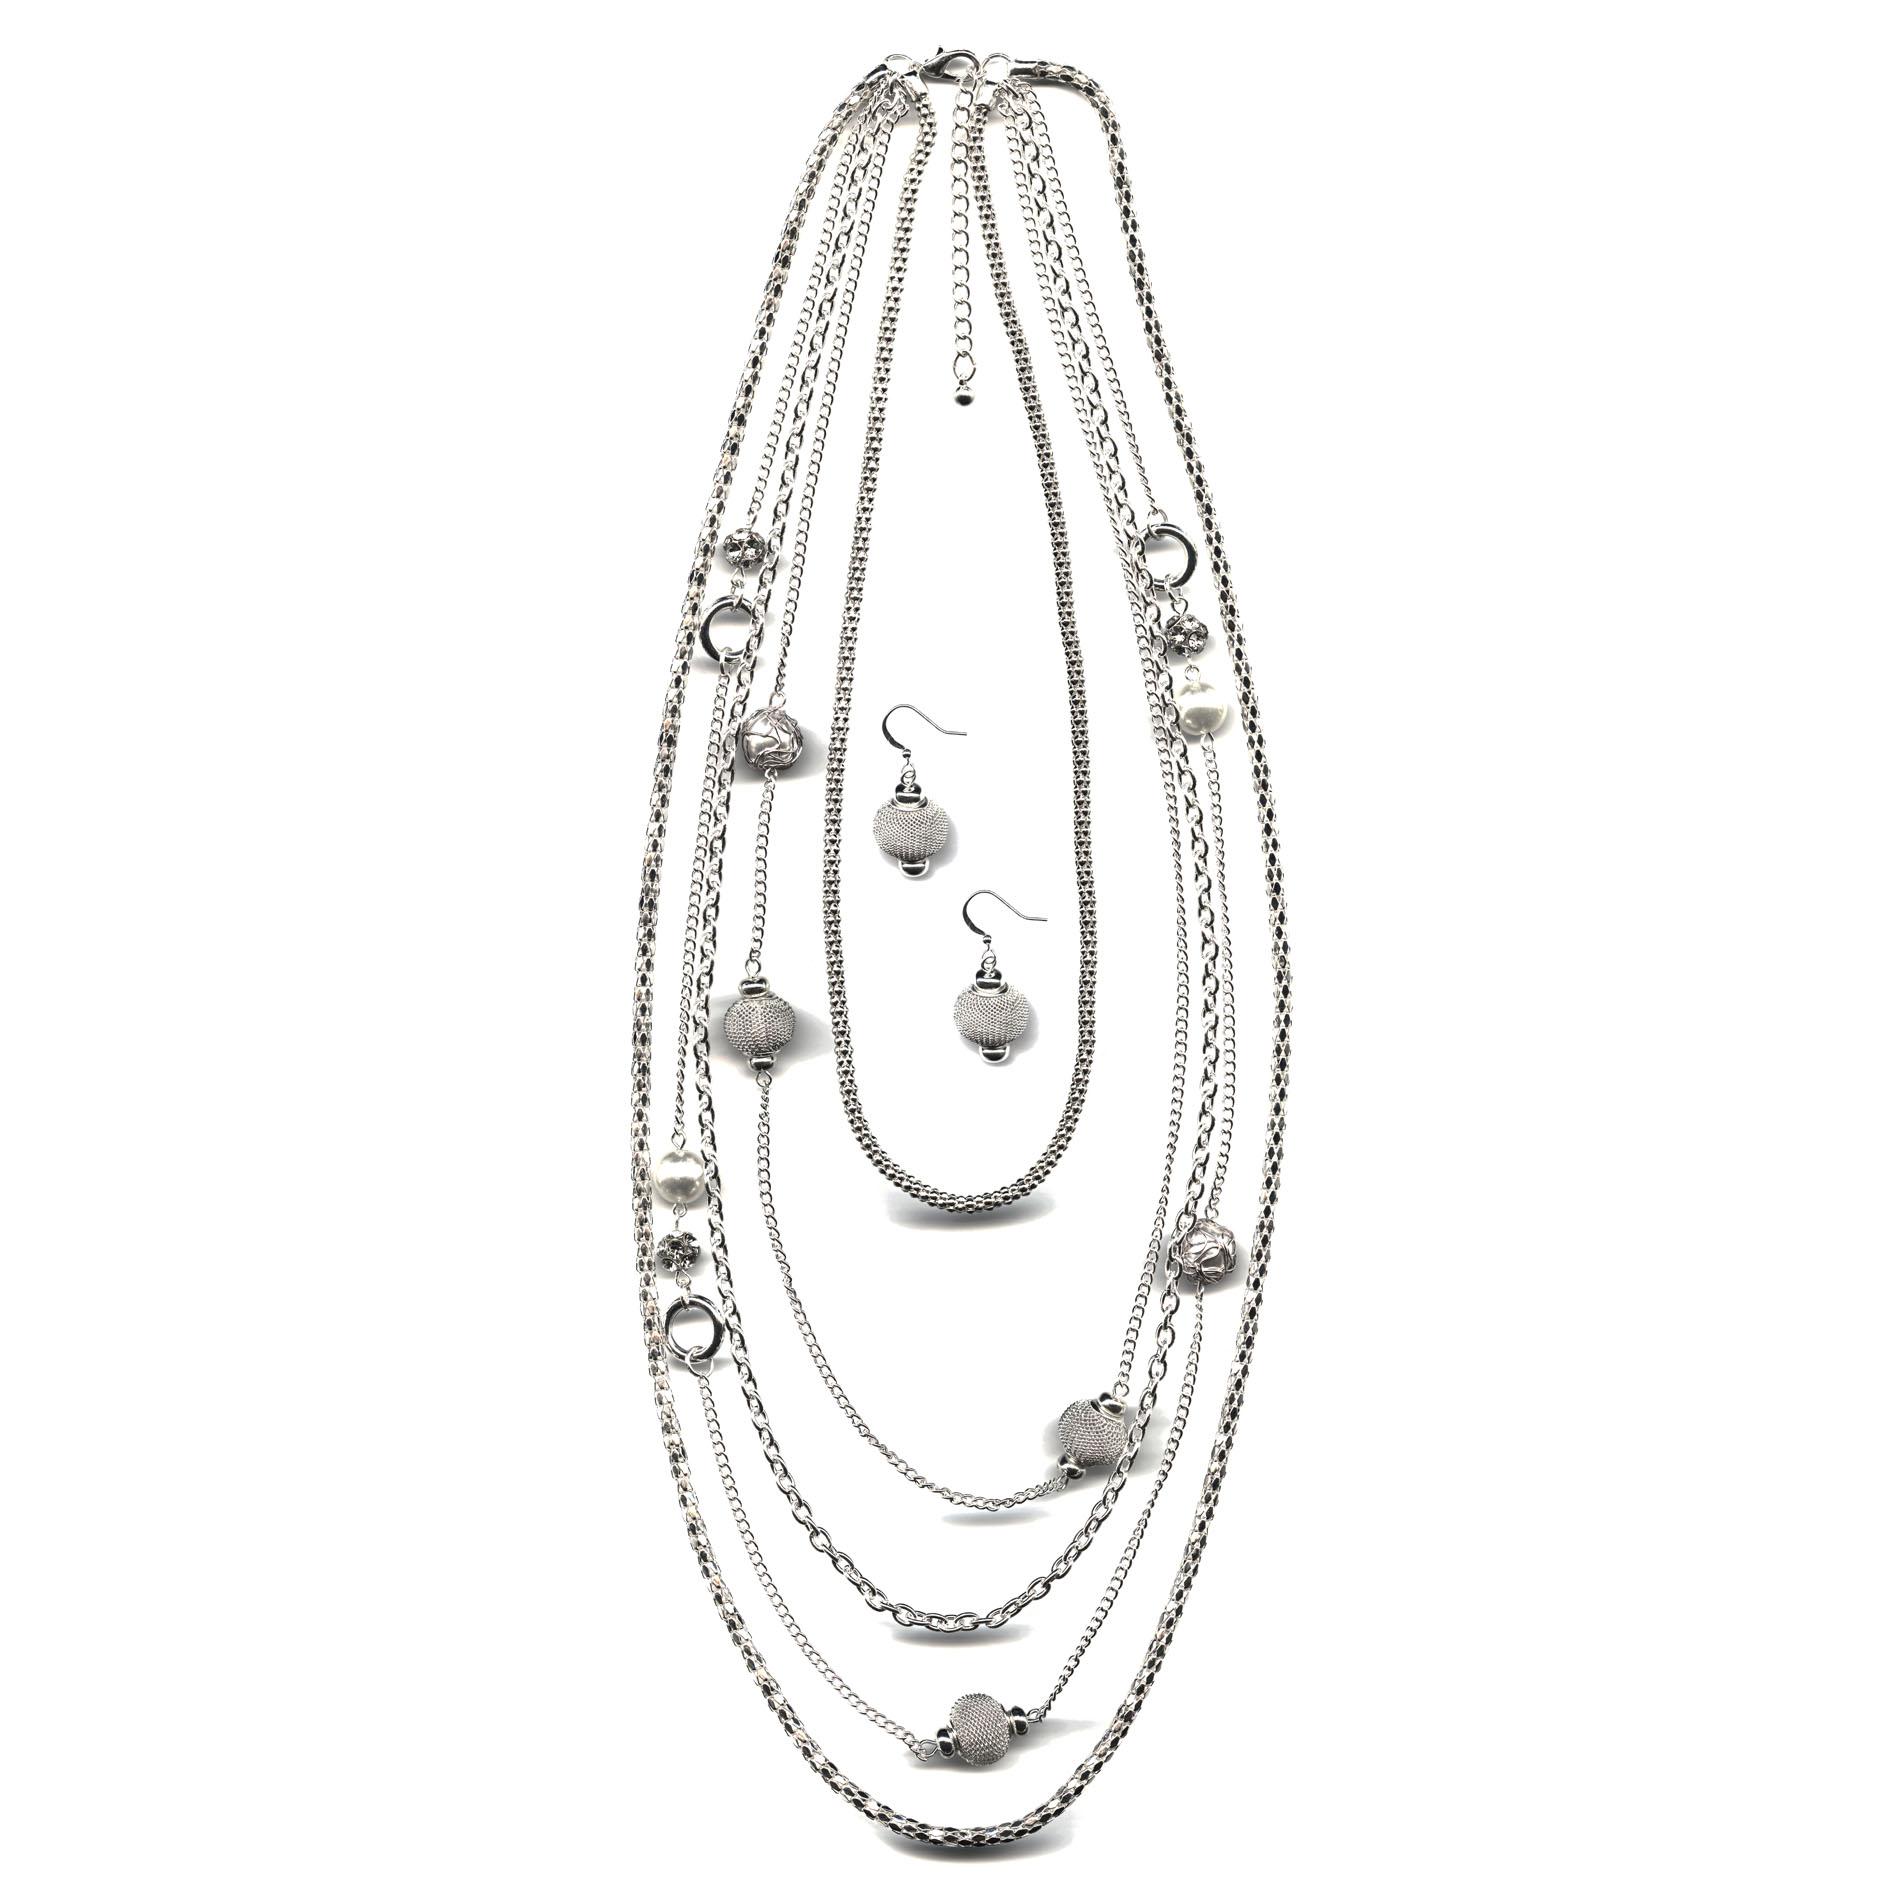 Jaclyn Smith Women's Silvertone Multi-Chain Necklace & Earrings